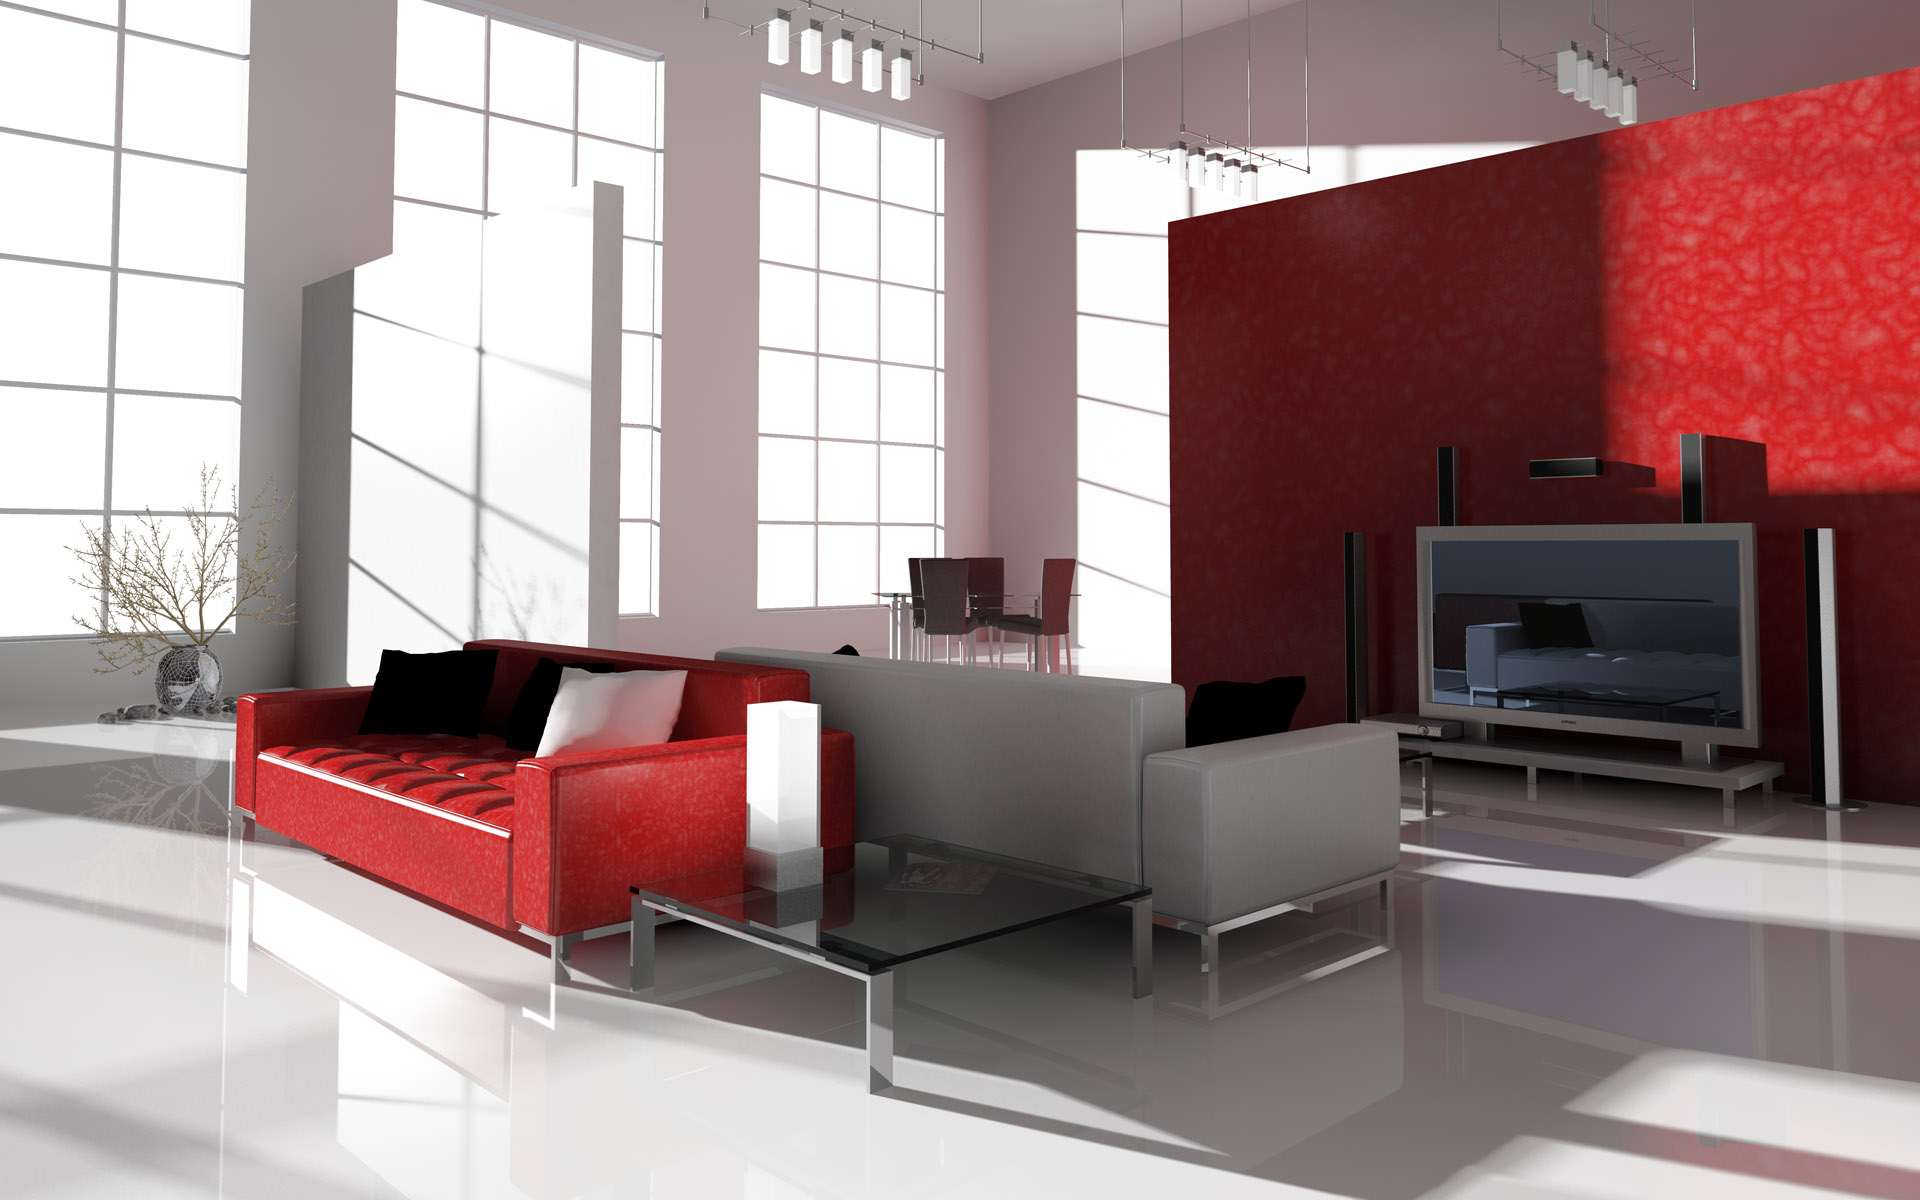 Classy Red and White Interior Design